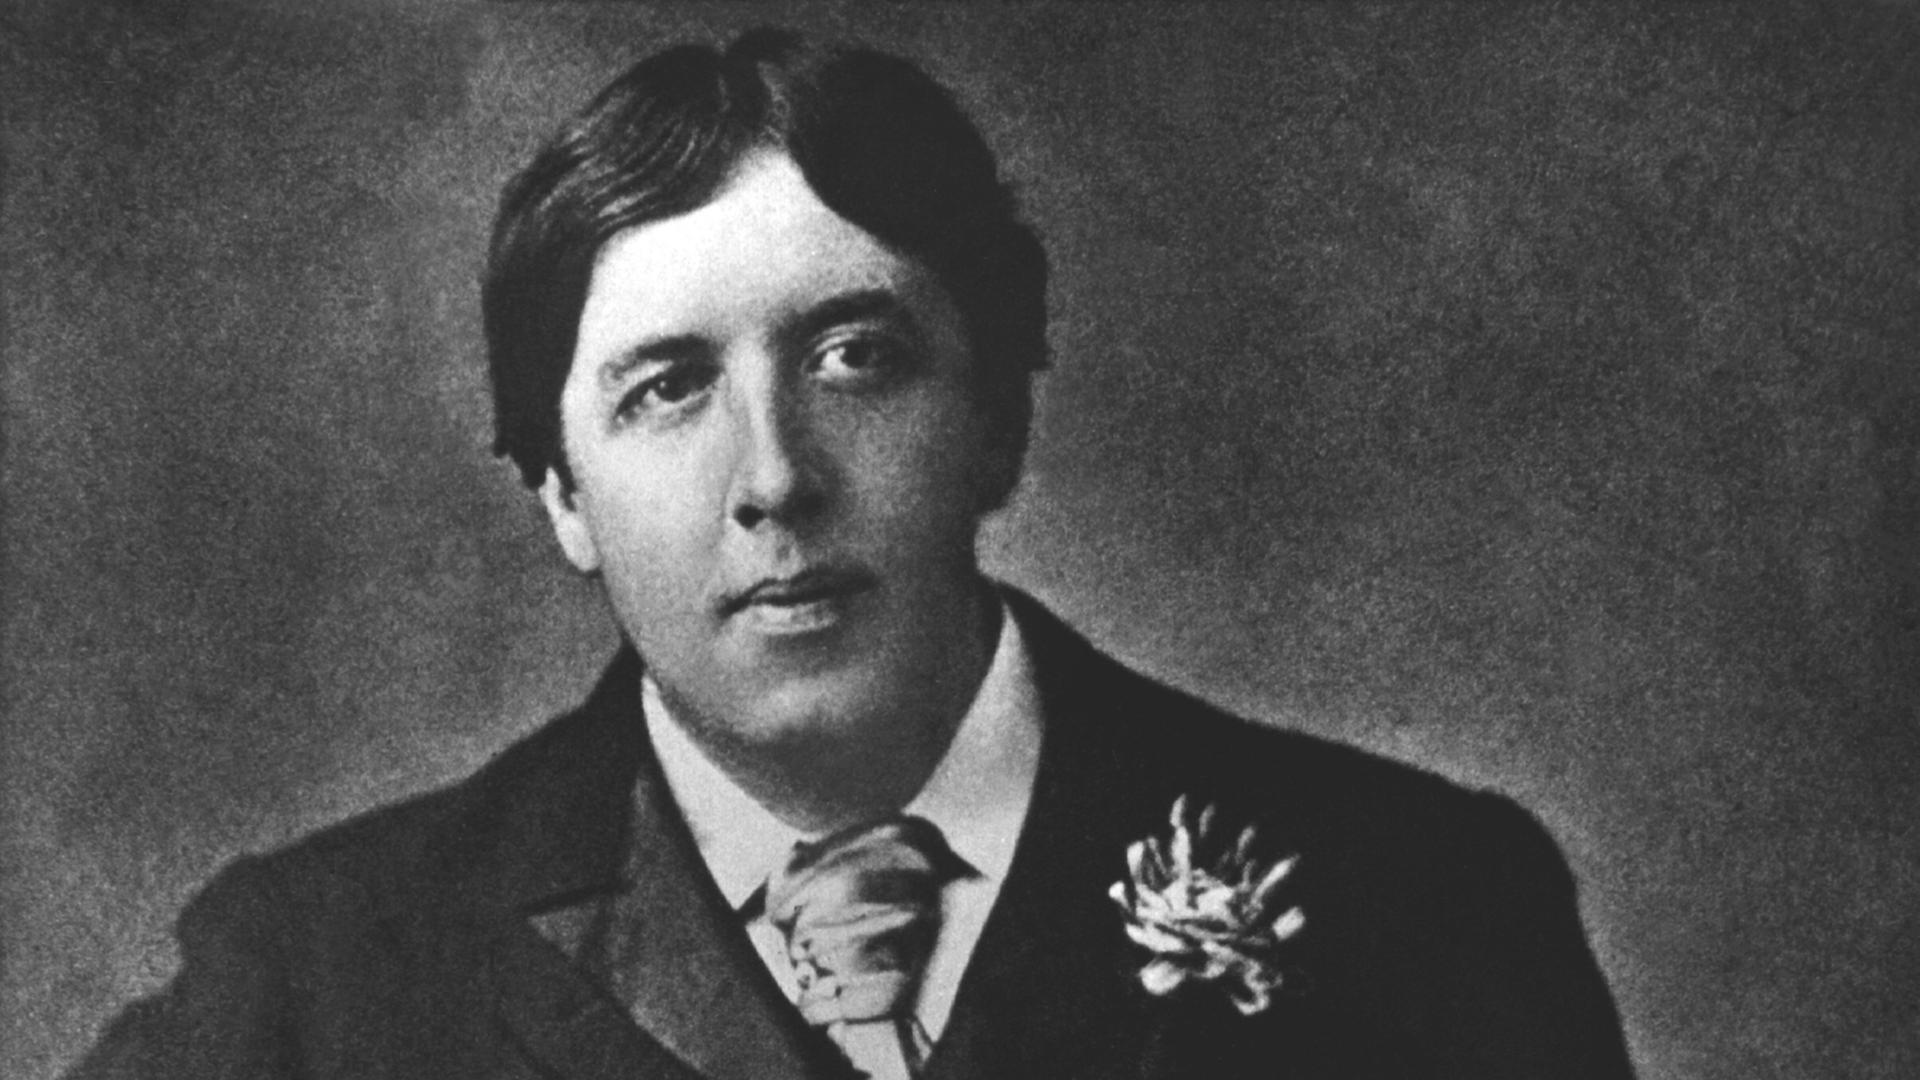 Zeitgenössische Aufnahme des irisch-britischen Schriftstellers Oscar Wilde. ("Dorian Gray", "Eine Frau ohne Bedeutung", "Lady Windmeres Fächer"). Er wurde am 16.10. 1854 in Dublin geboren und verstarb am 30.11.1900 in Paris.